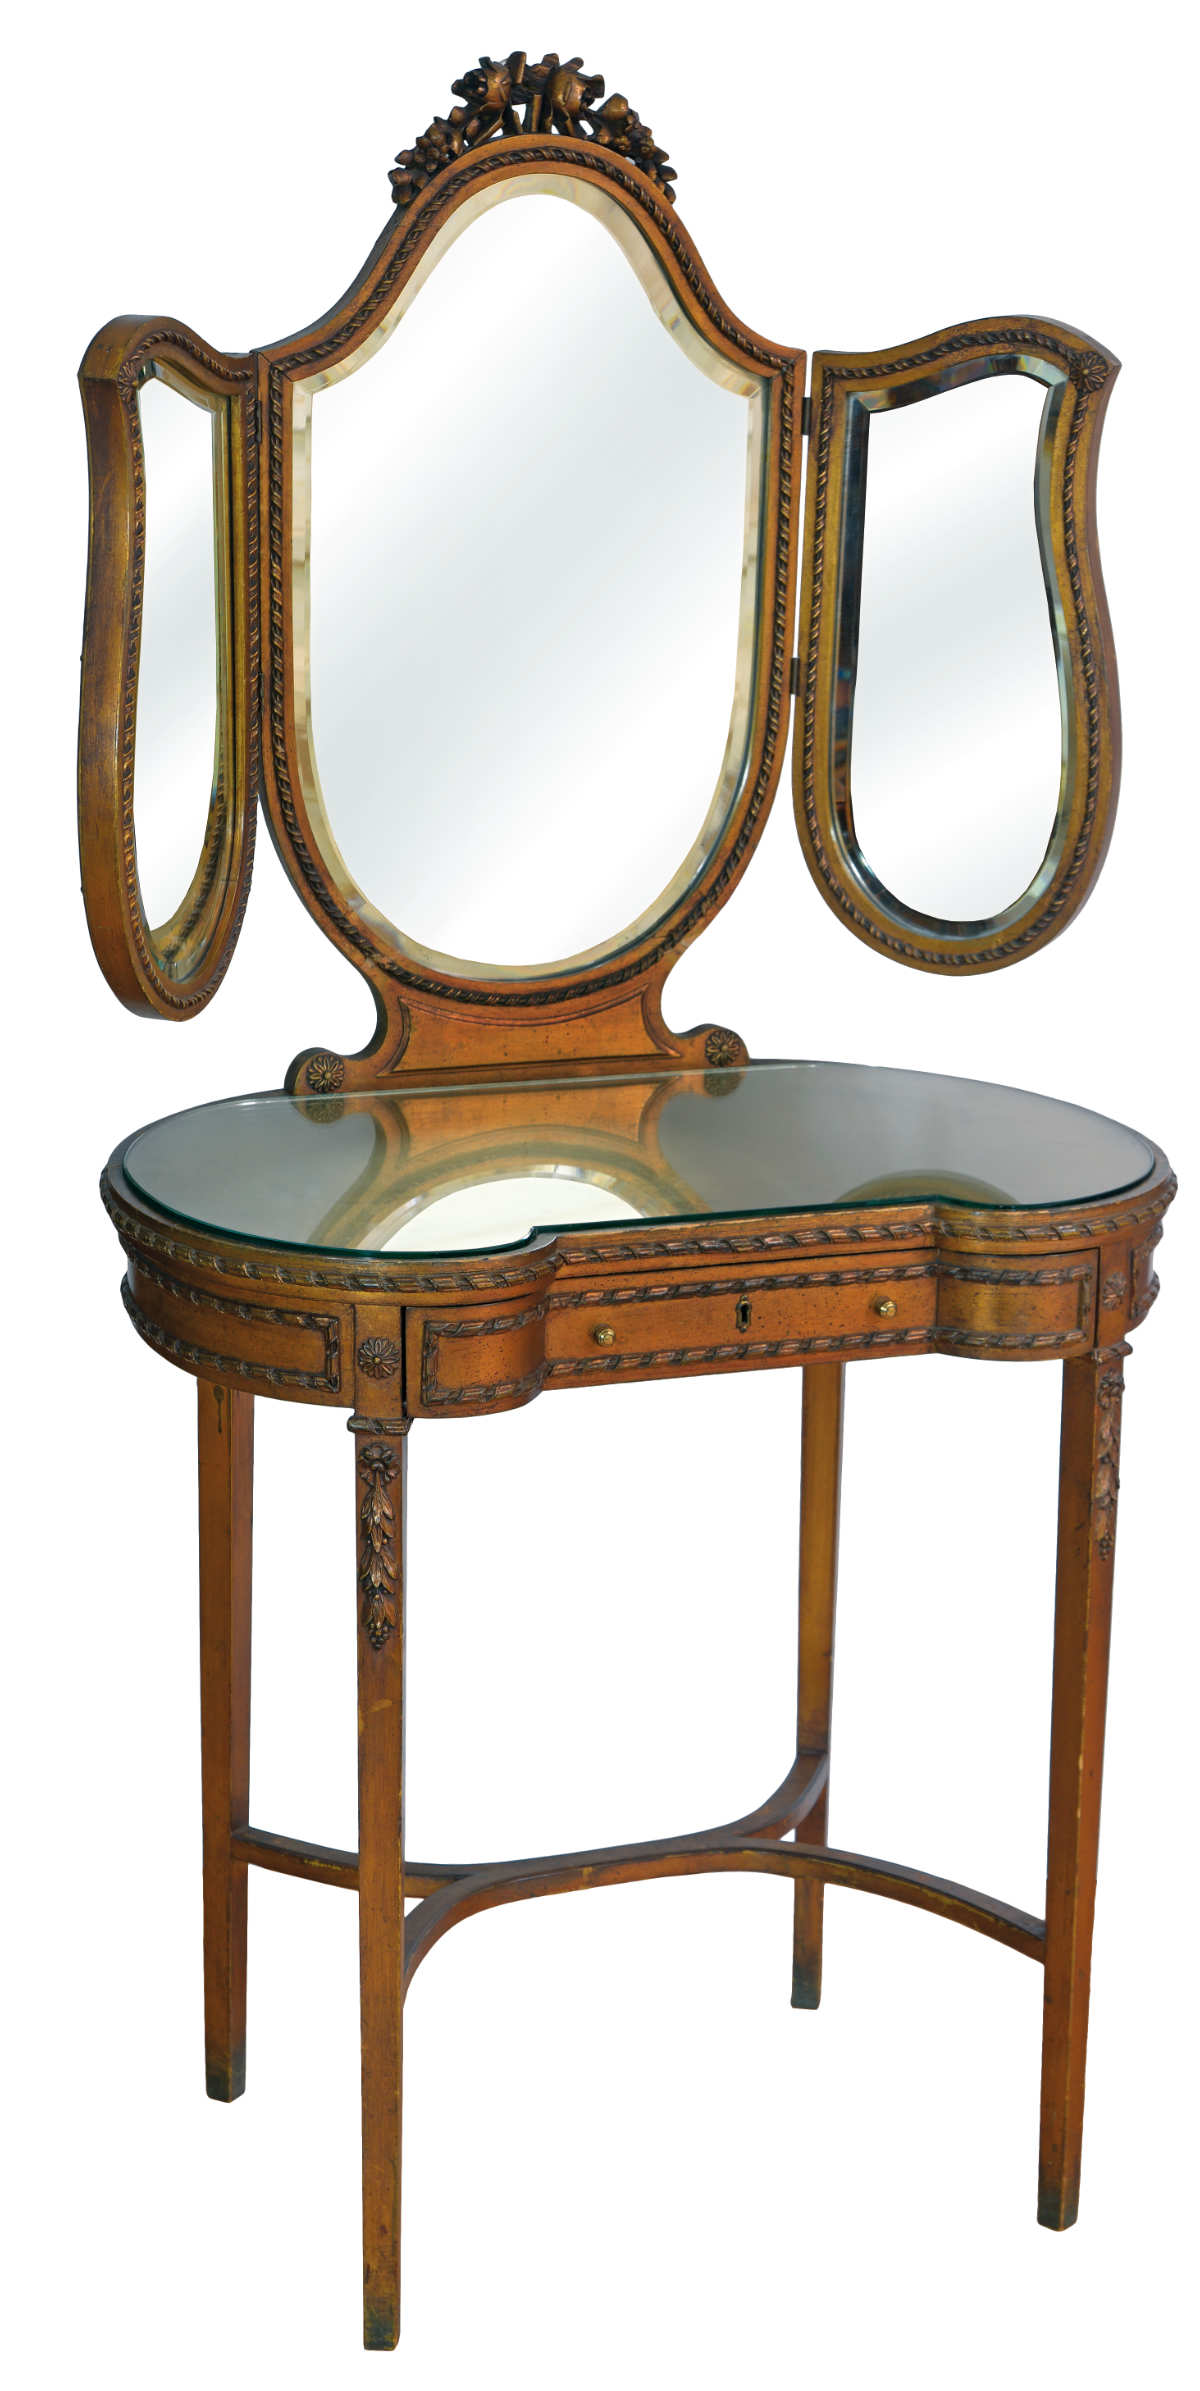 Schminktisch mit Spiegel, aus dem 19. Jhd., kupferfarben vergoldet, mit Facettenspiegel, Frontalansicht.